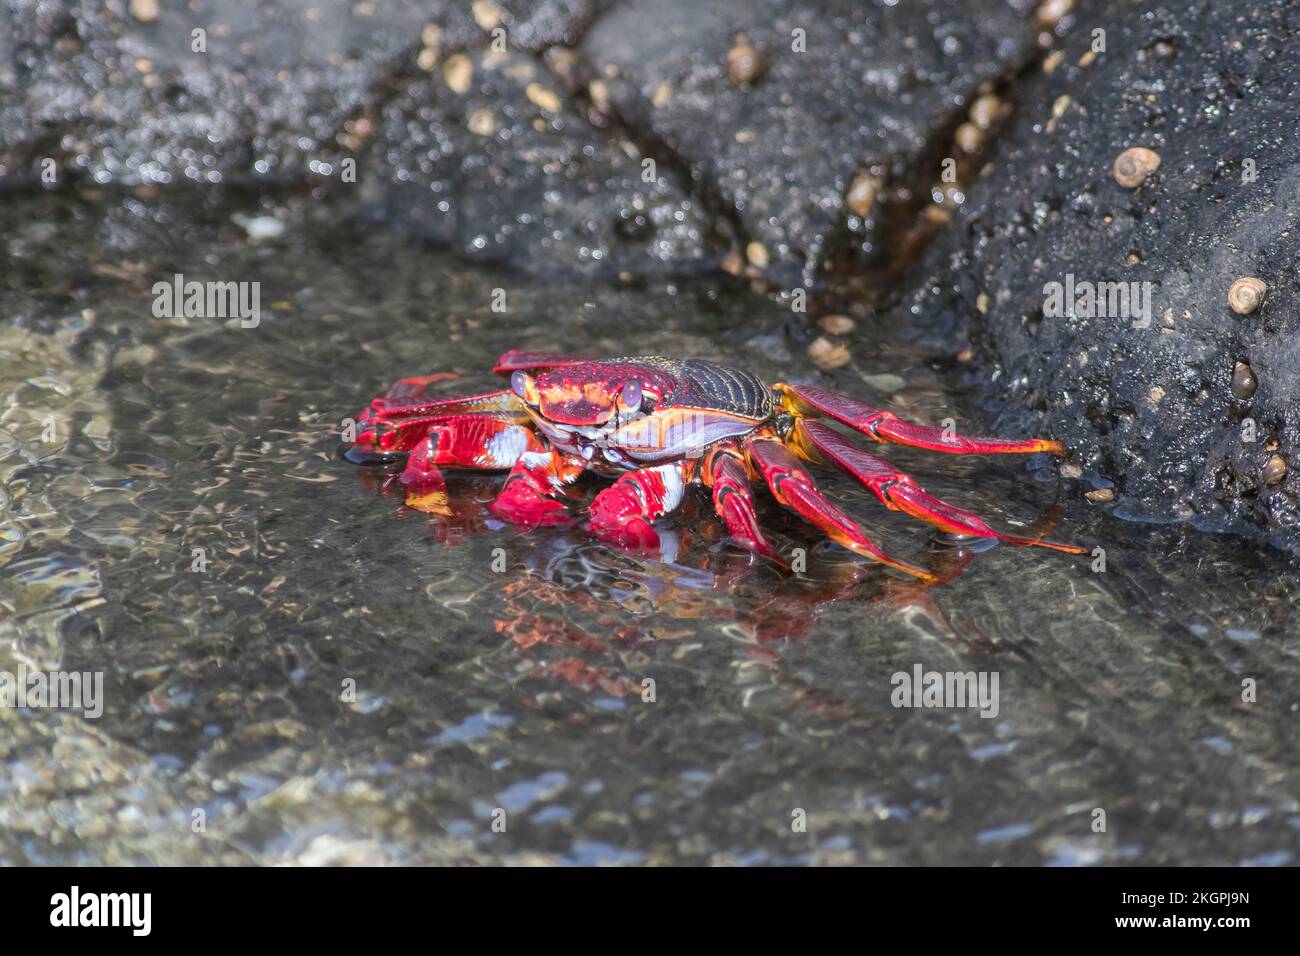 Crabe rouge (Grapsus adscensionis) en eau peu profonde Banque D'Images